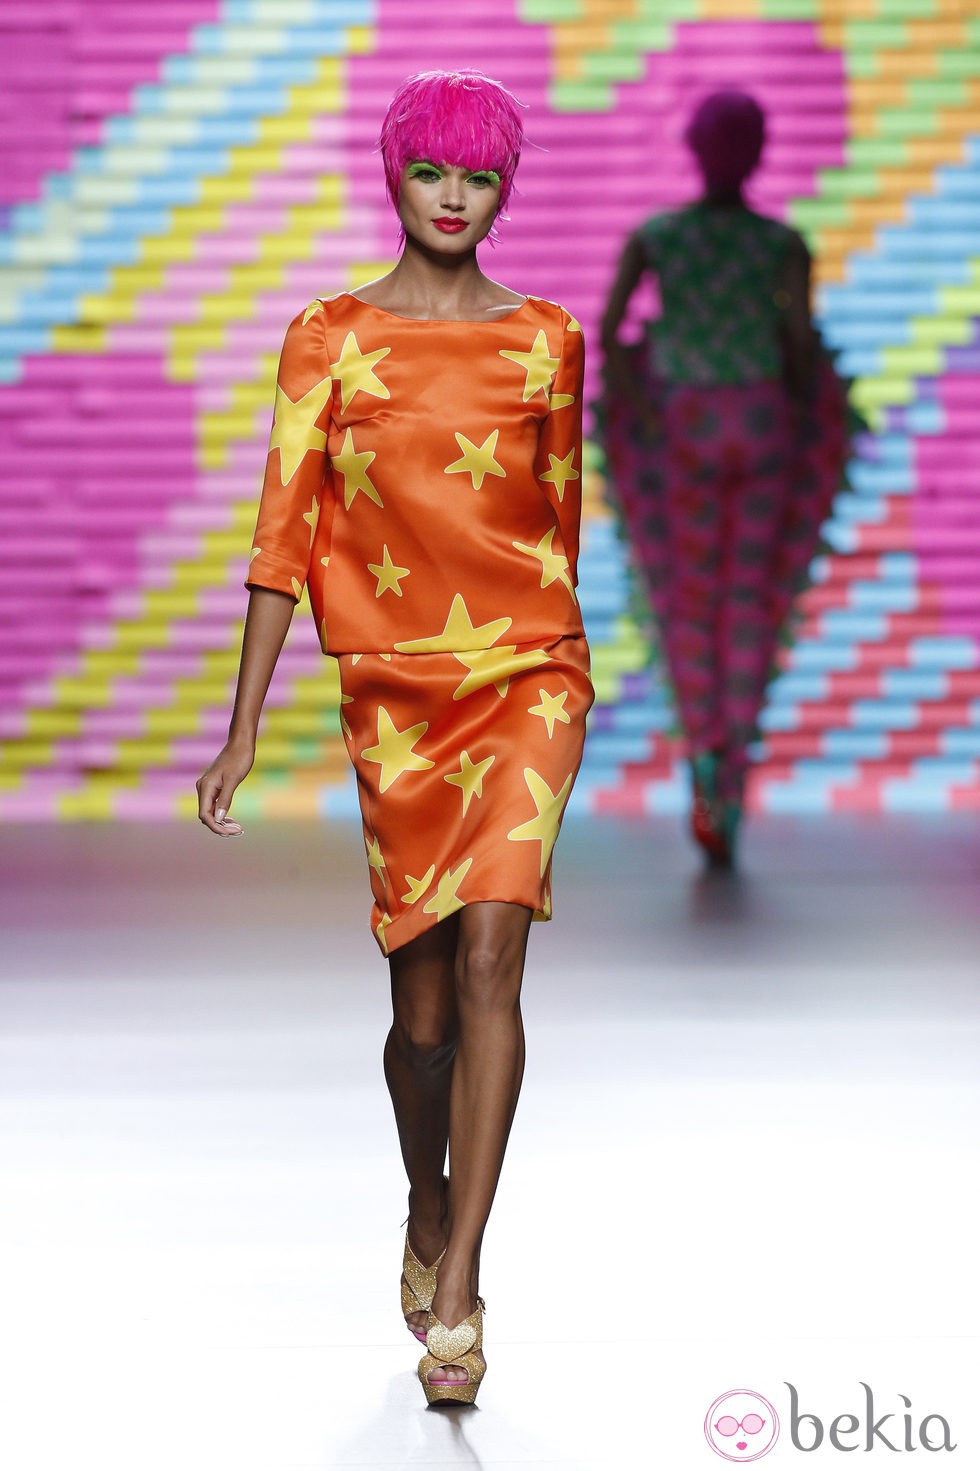 Vestido naranja con estrellas de Ágatha Ruiz de la Prada en Madrid Fashion Week primavera/verano 2015